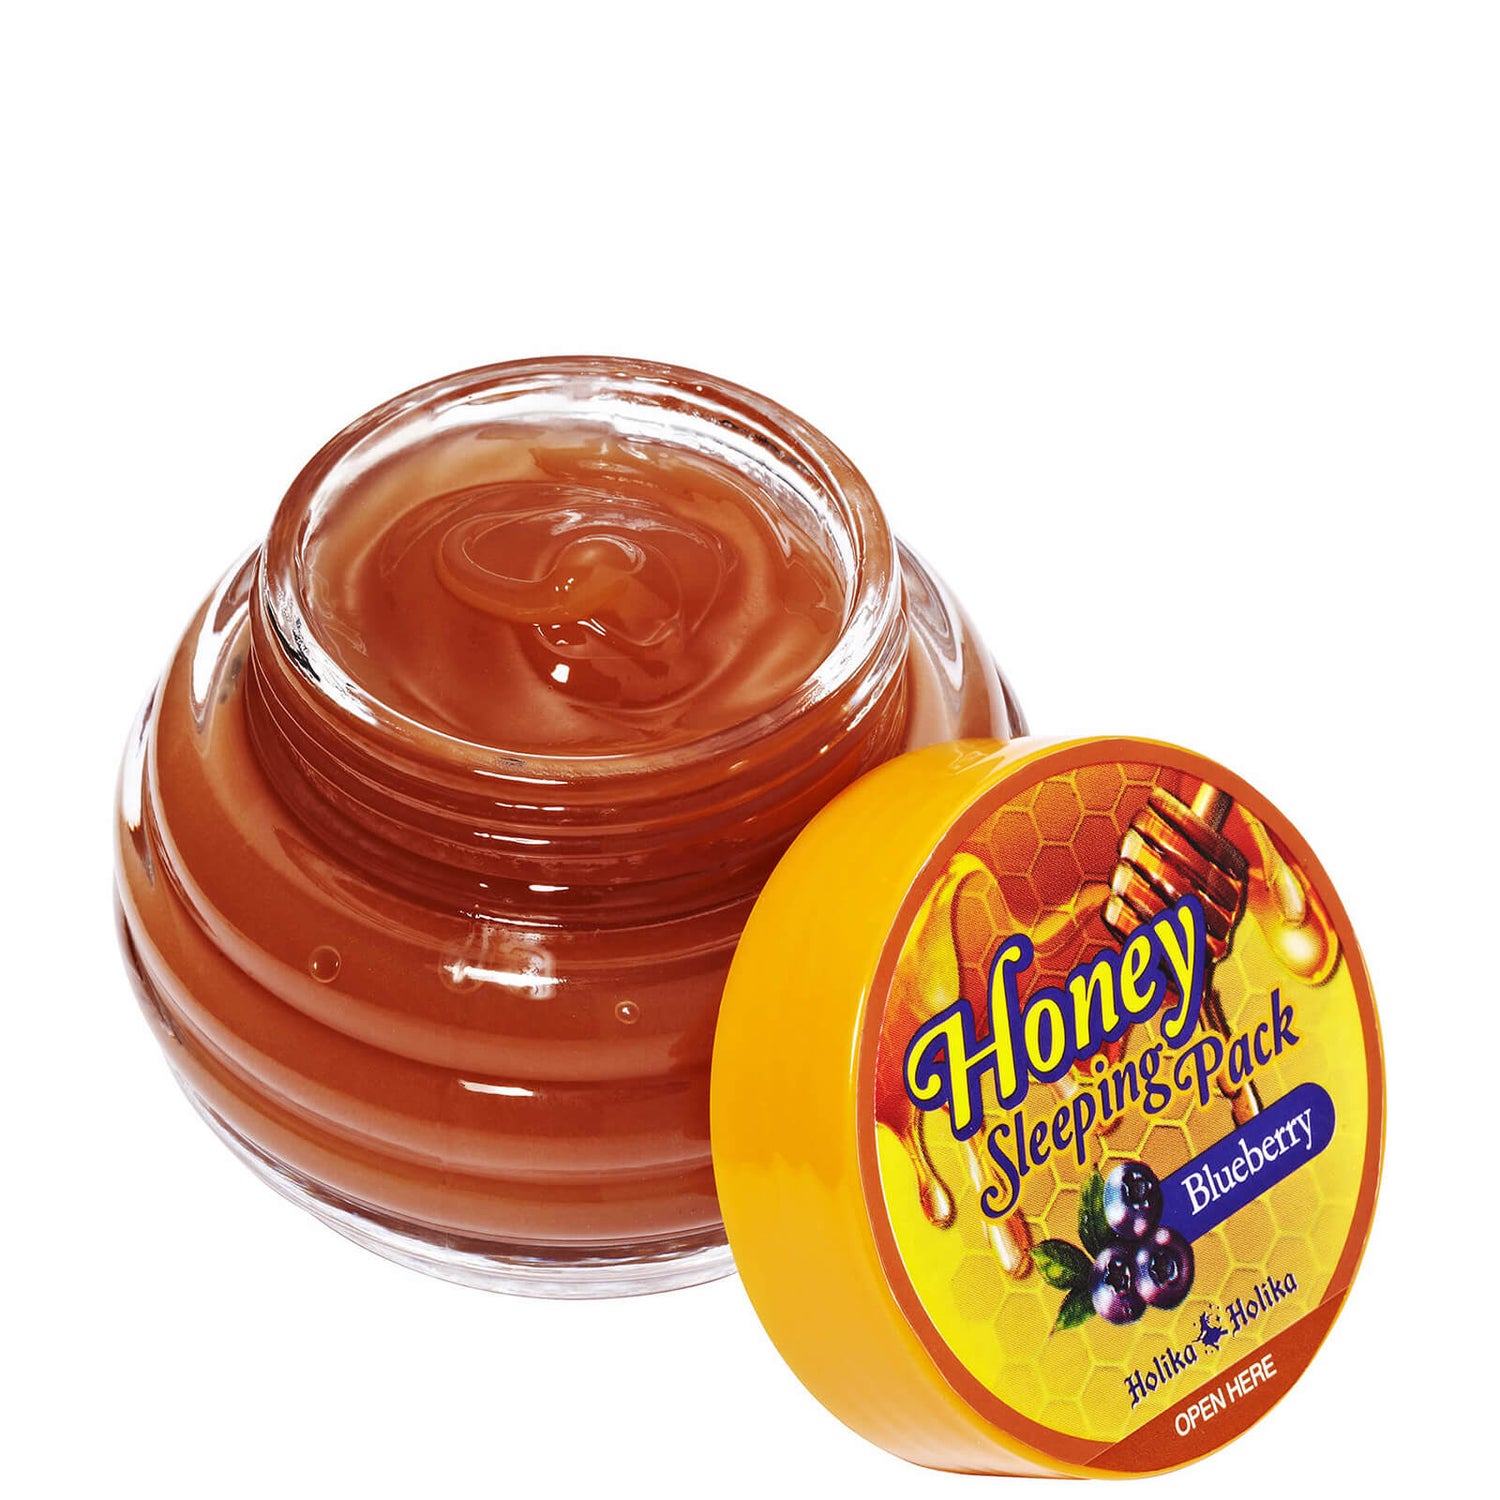 Conjunto para Durante a Noite Mel (Mirtilo) Honey Sleeping Pack da Holika Holika